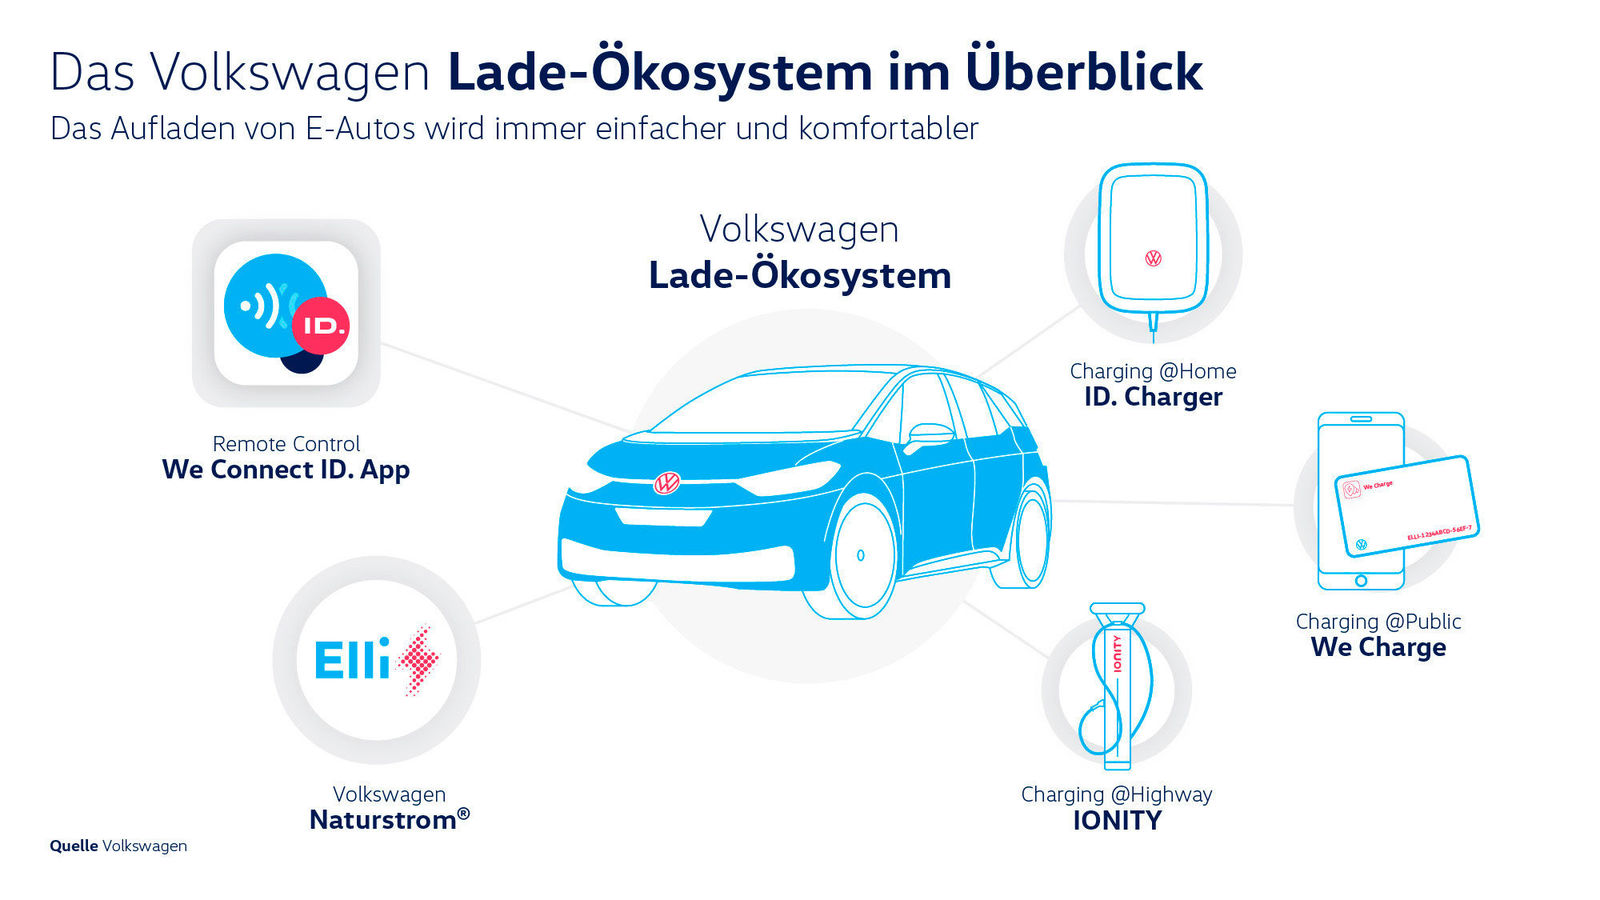 Schnell, einfach und komfortabel – Ladelösungen von Volkswagen